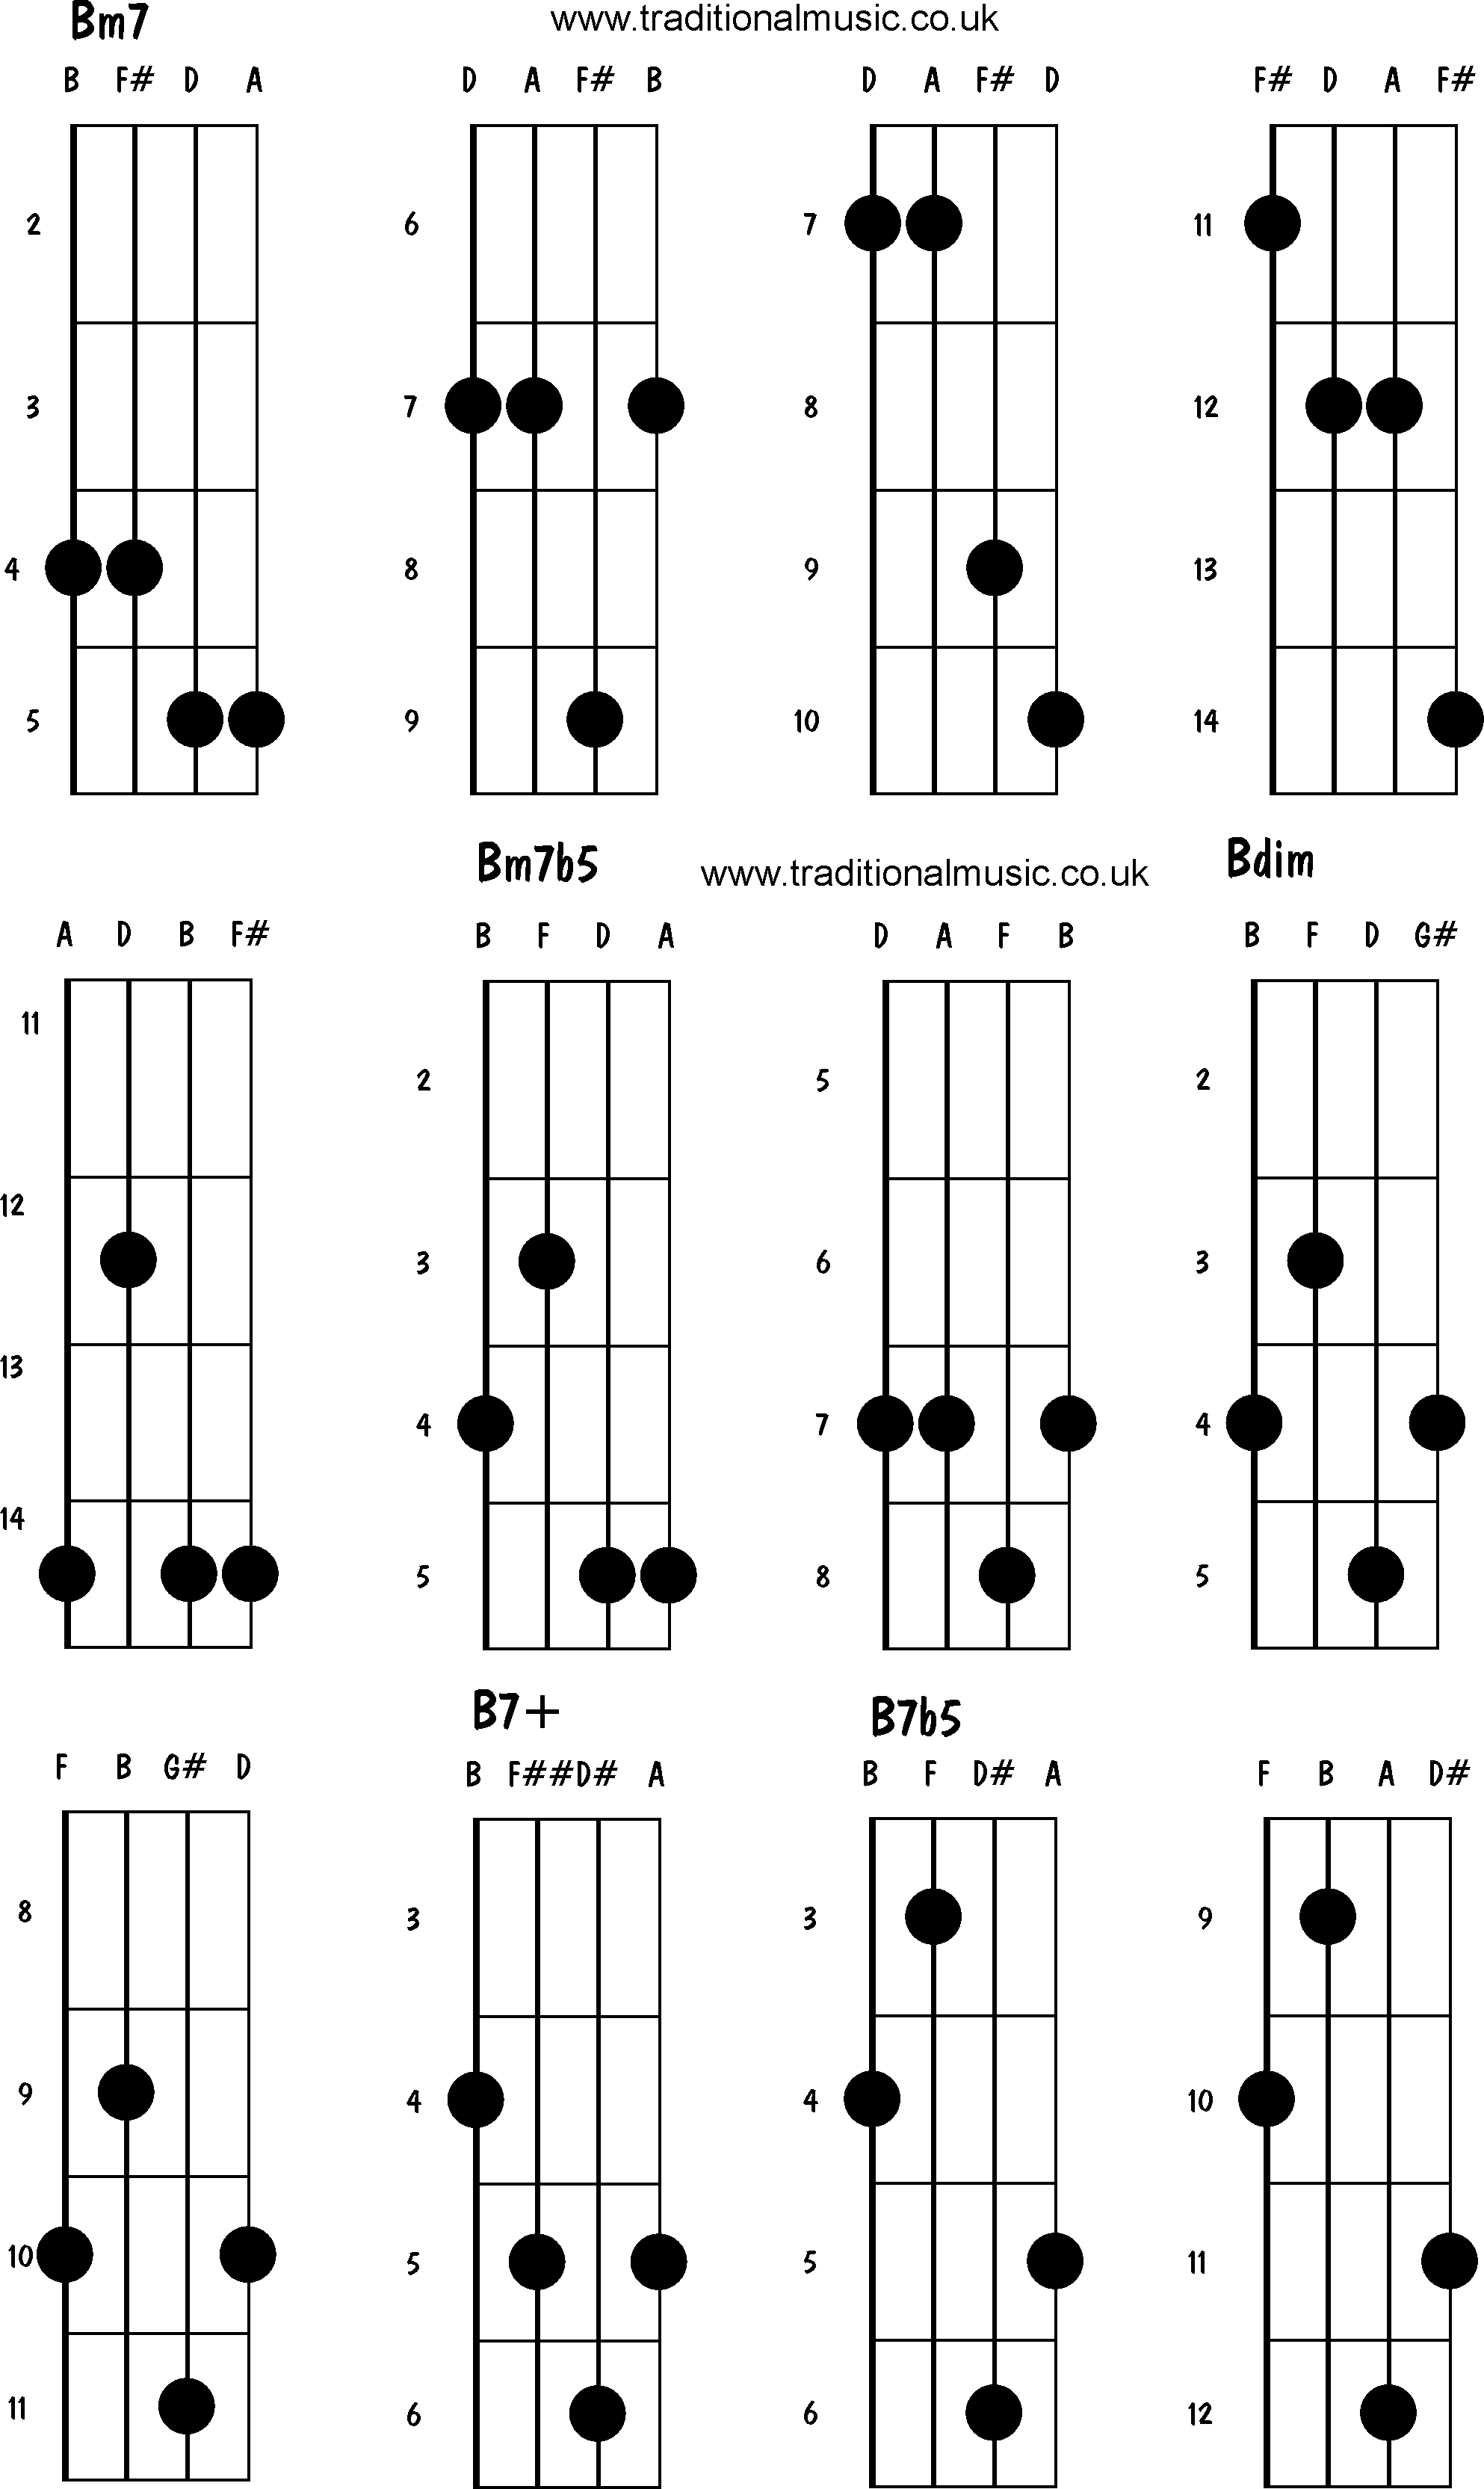 Advanced mandolin chords:Bm7, Bm7b5, Bdim, B7+, B7b5